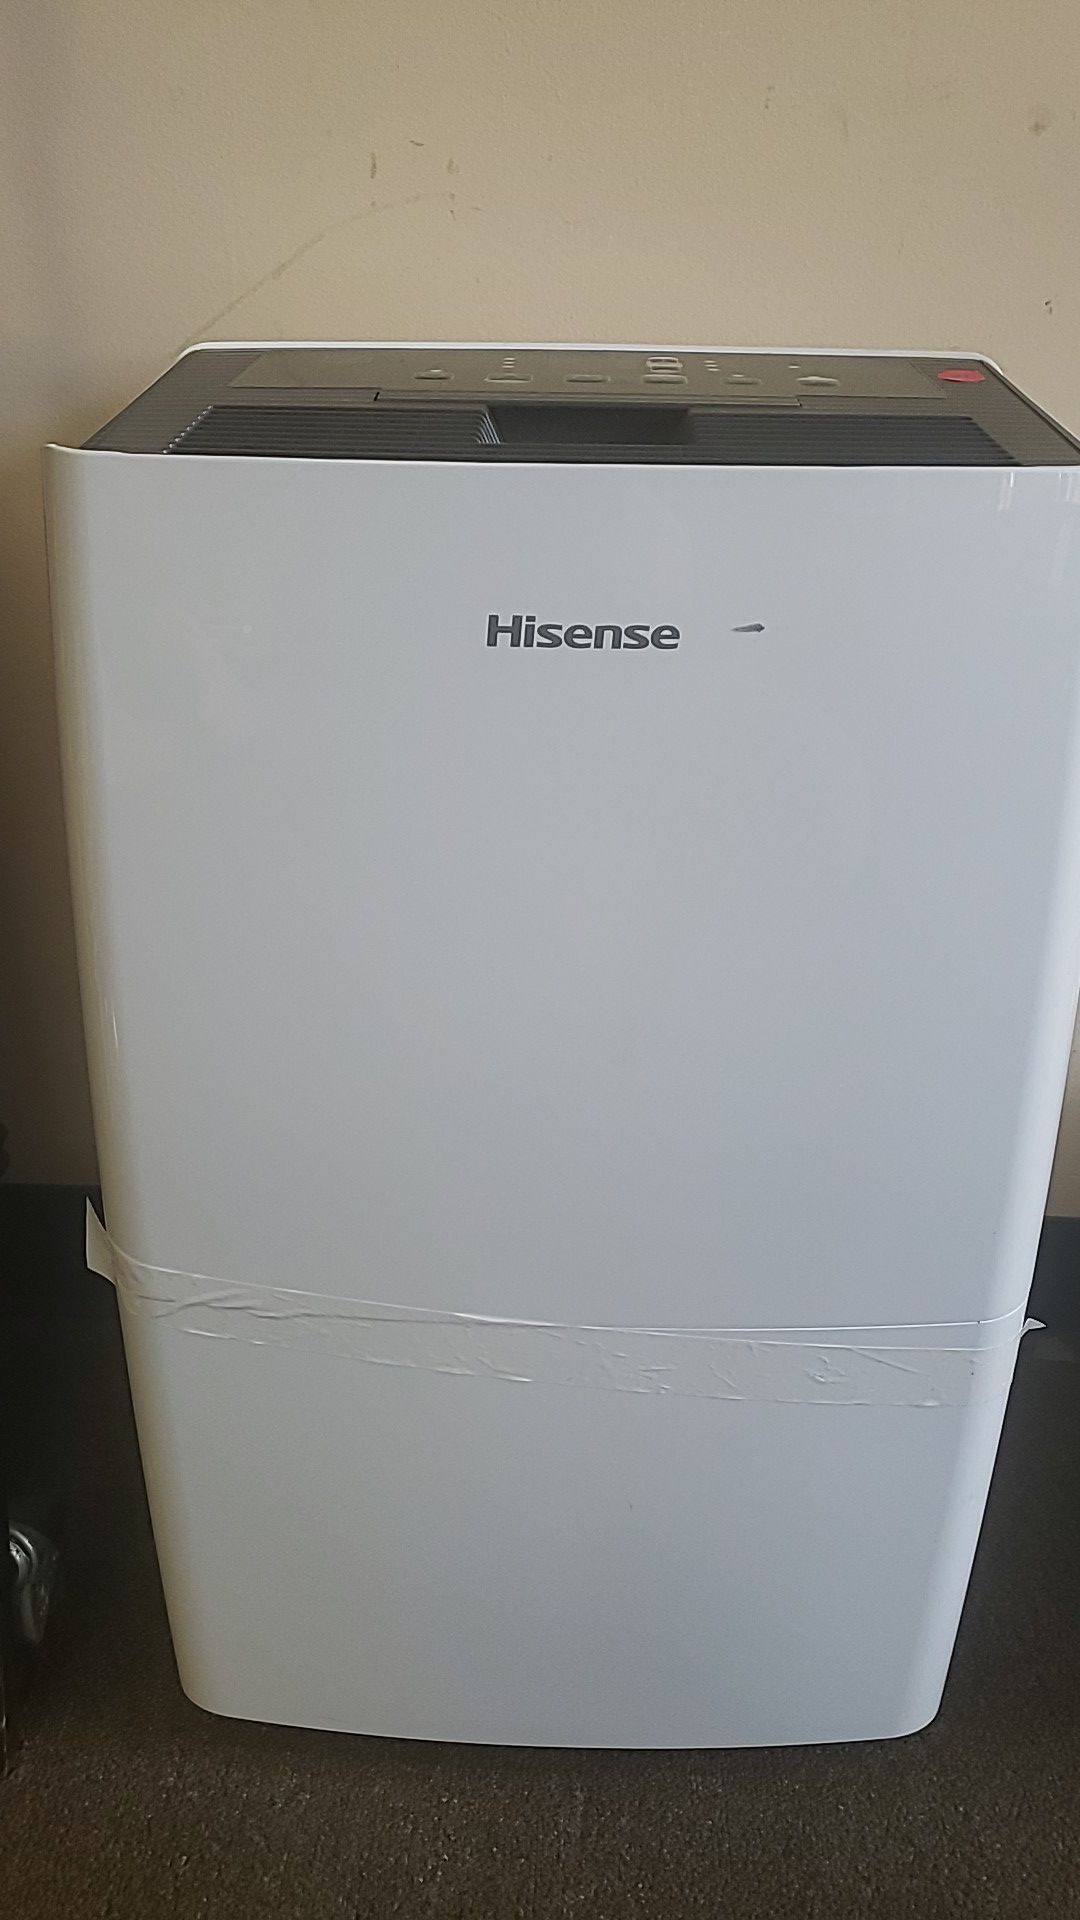 Hisense DH70KP1WG Dehumidifier AS IS